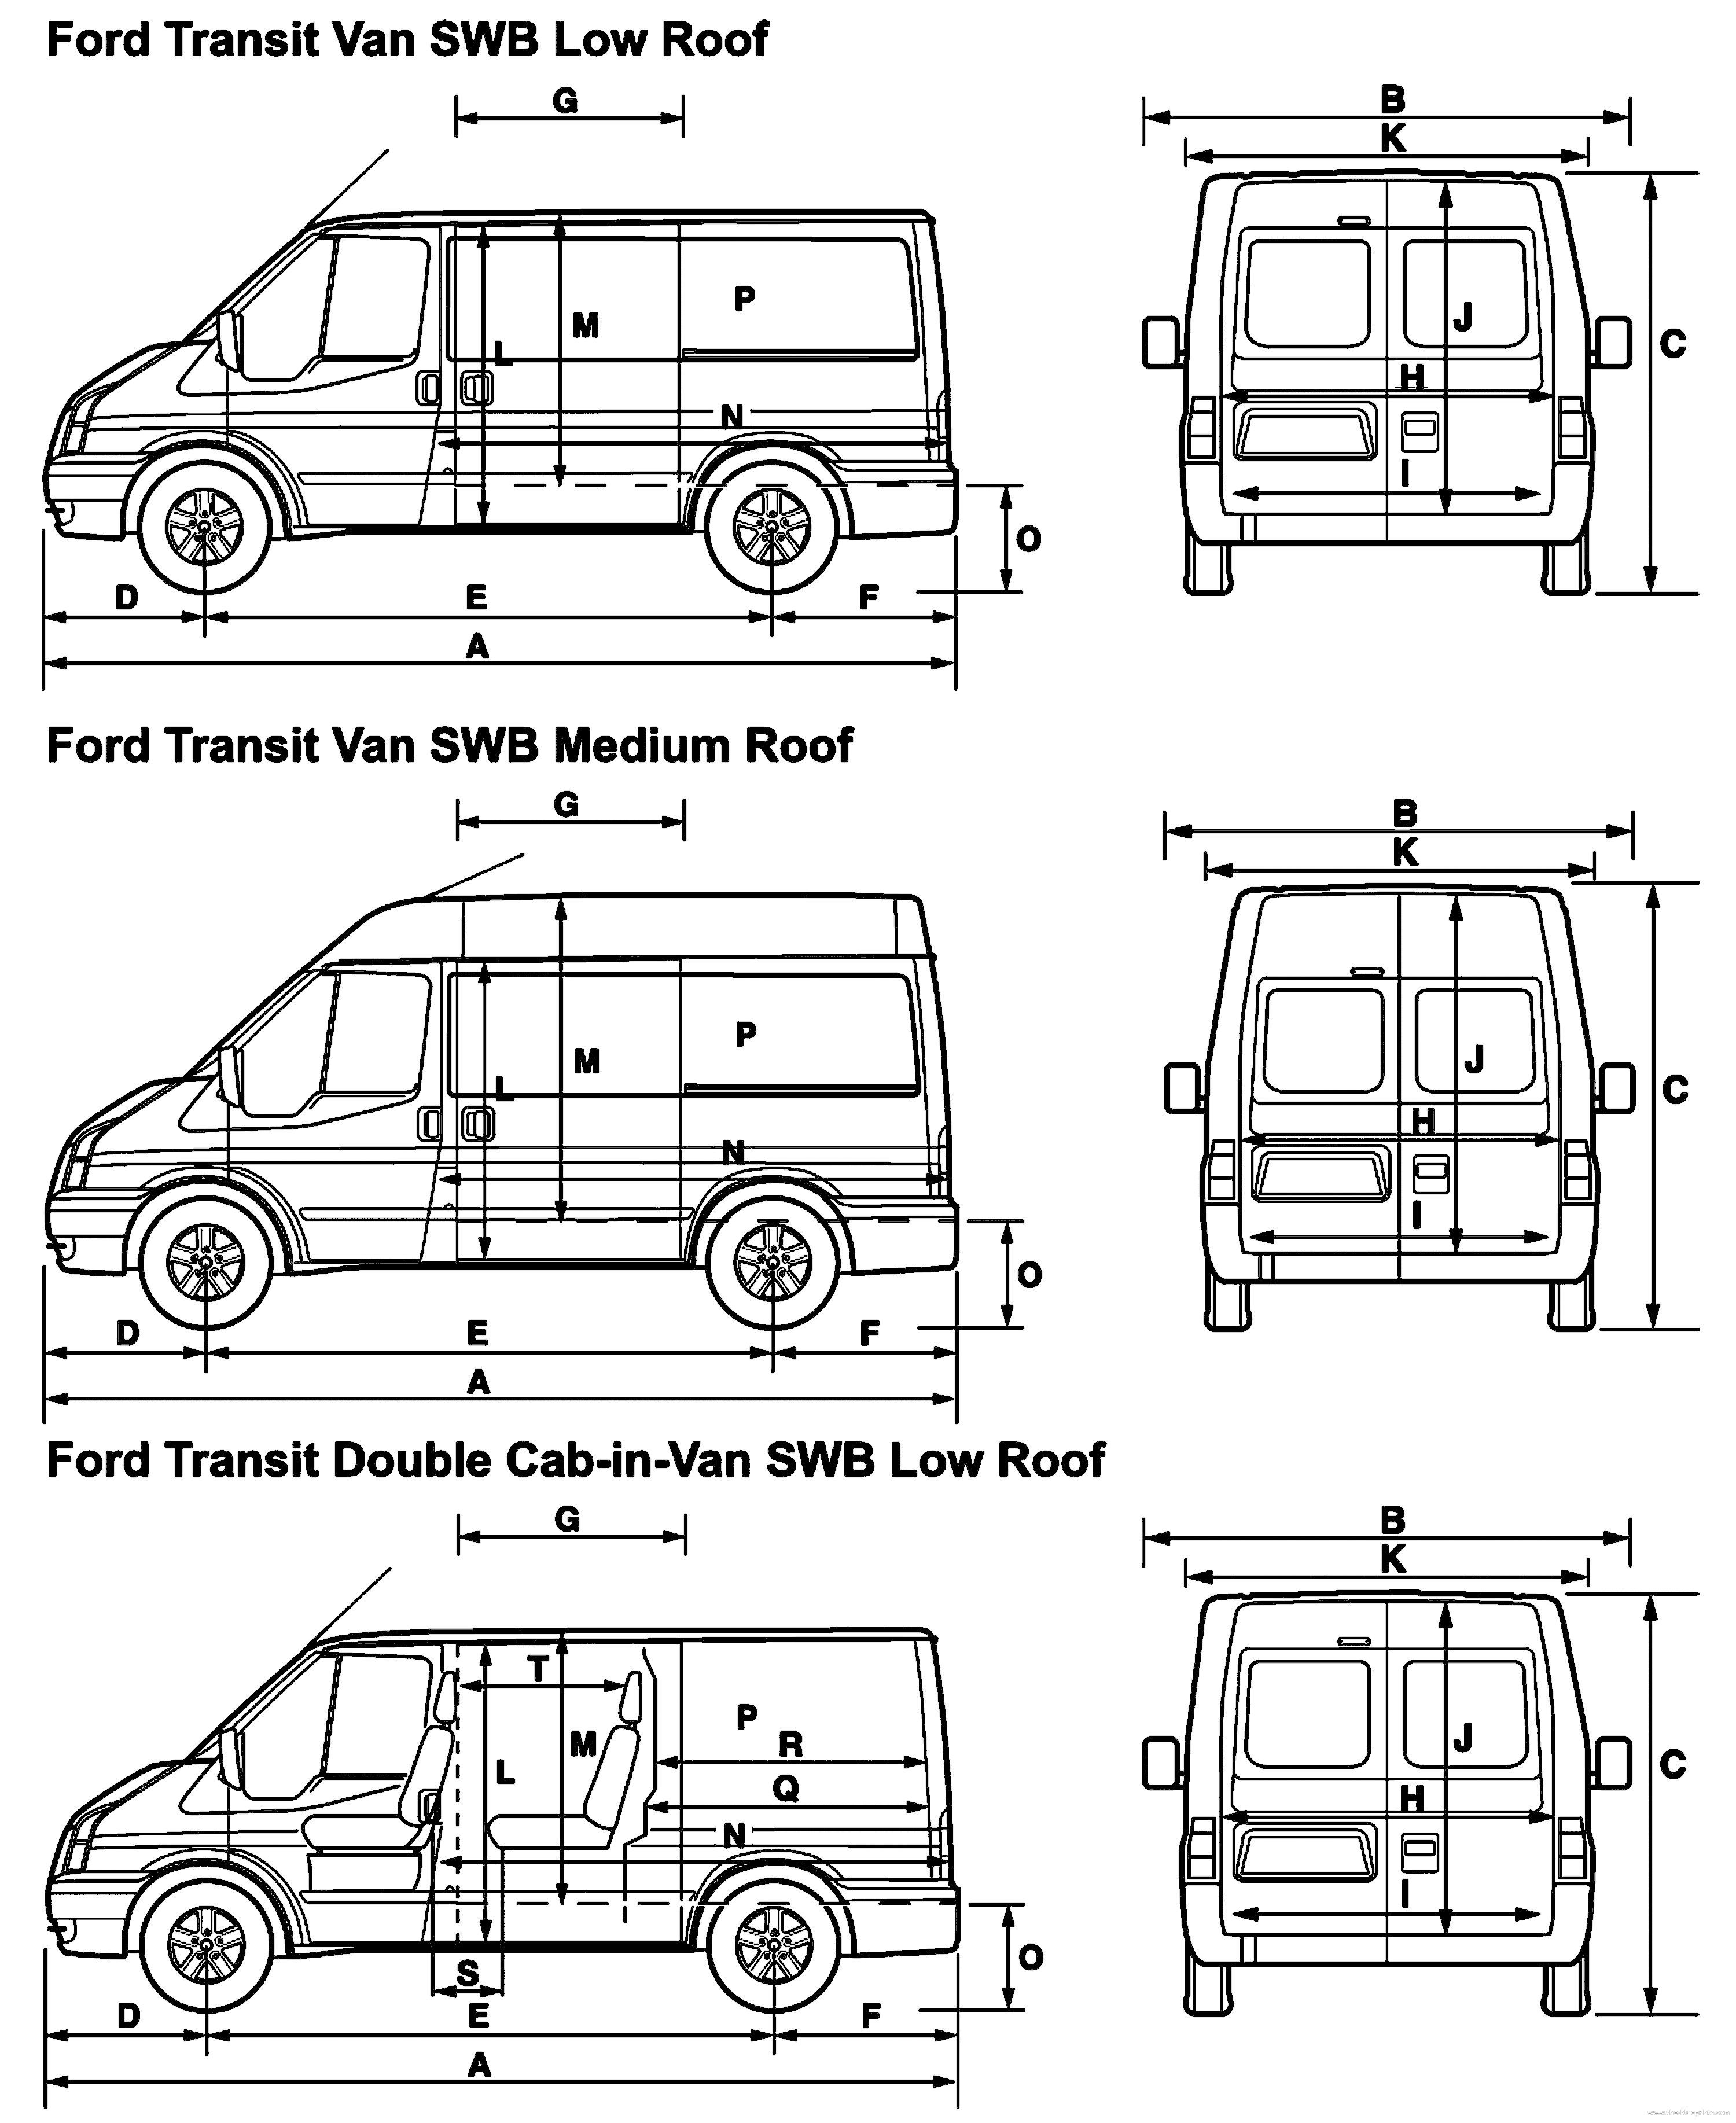 Ford transit panel van dimensions #6